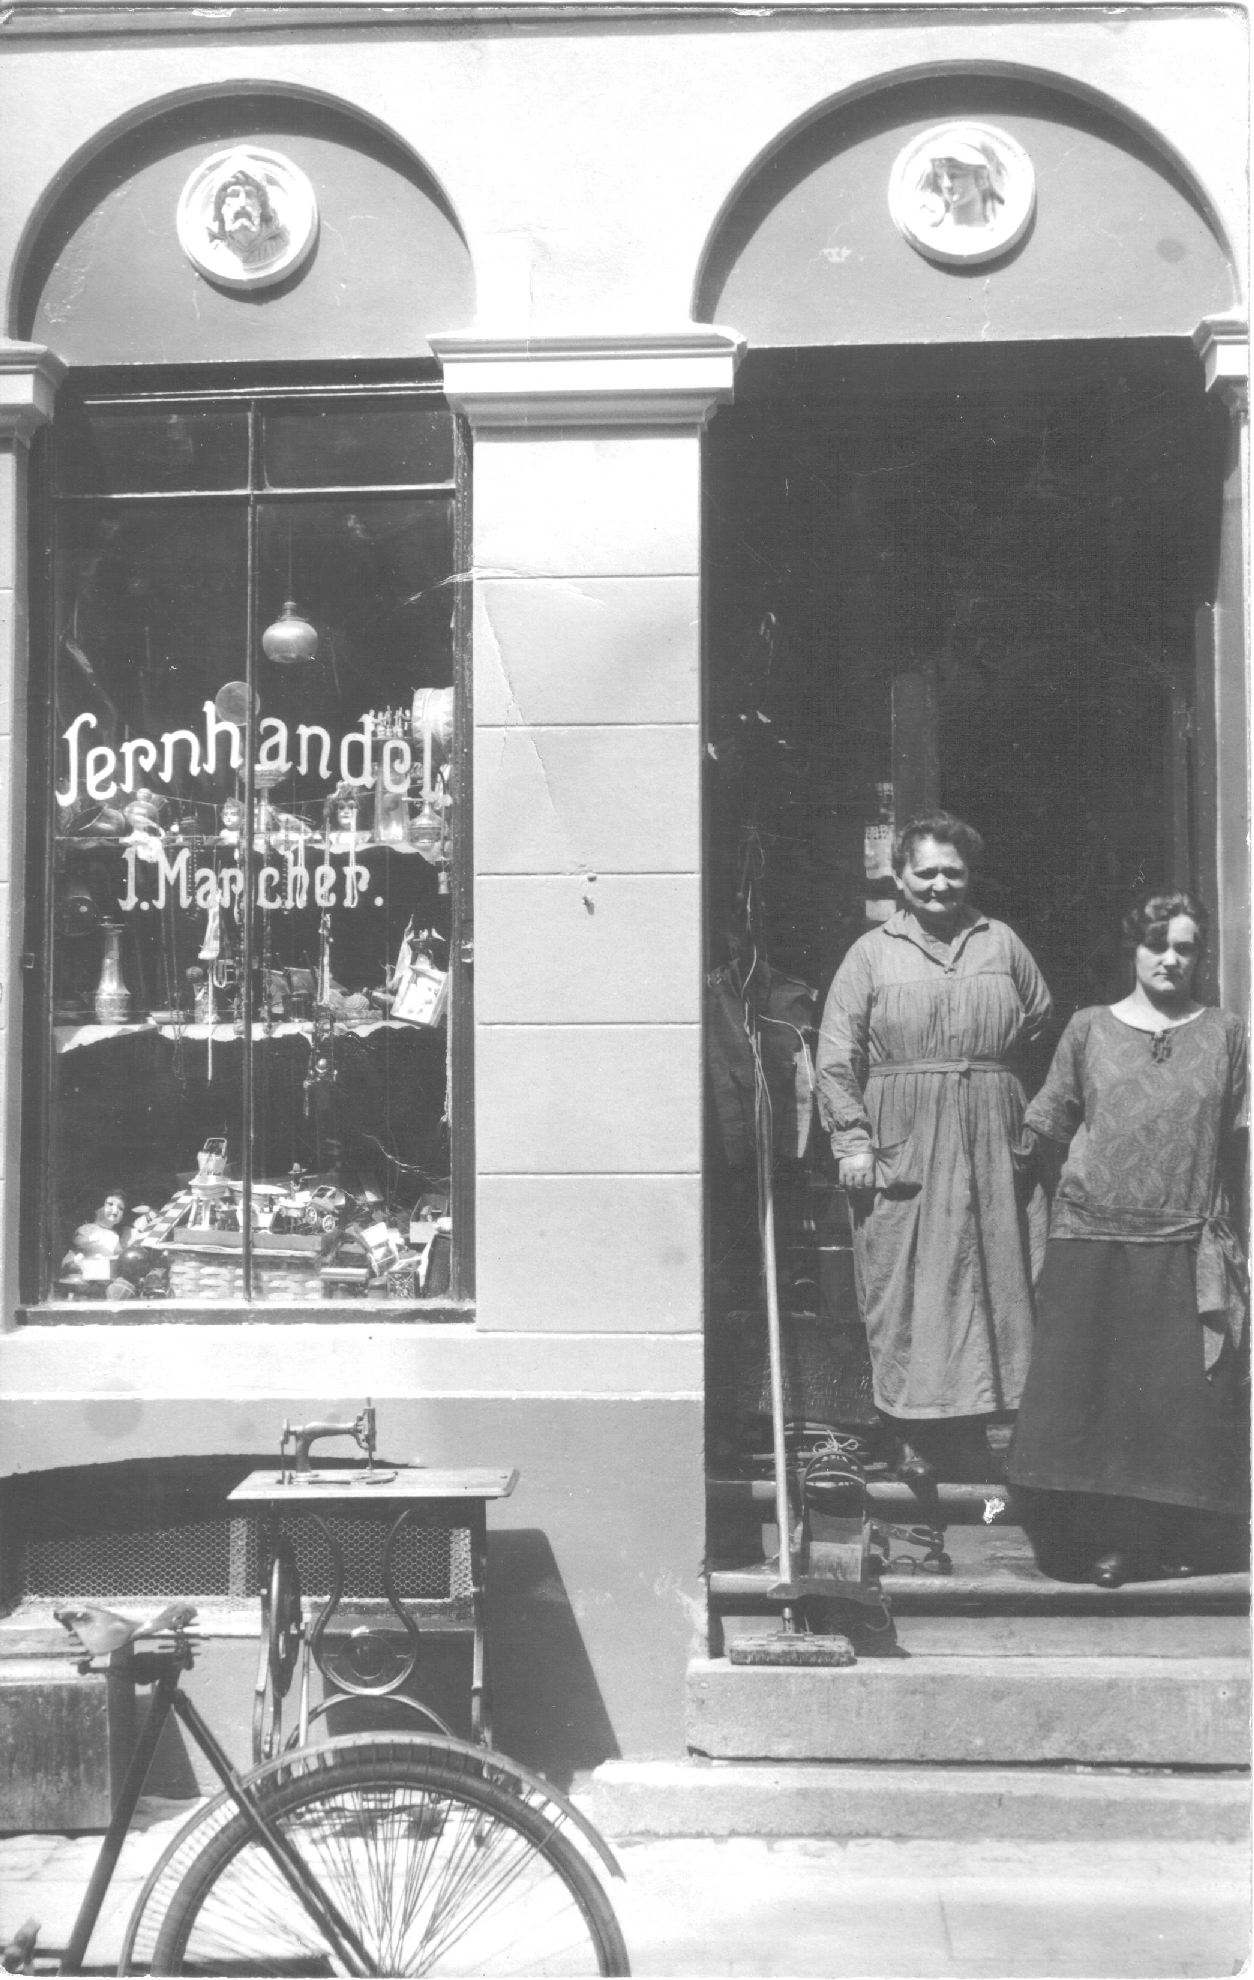 Jernhandel i Sct. Hansgade 15, st., Københavns Nørrebro. Det er Johanne Marie Jensen og datteren Emmy Marcher, der ses på billedet.